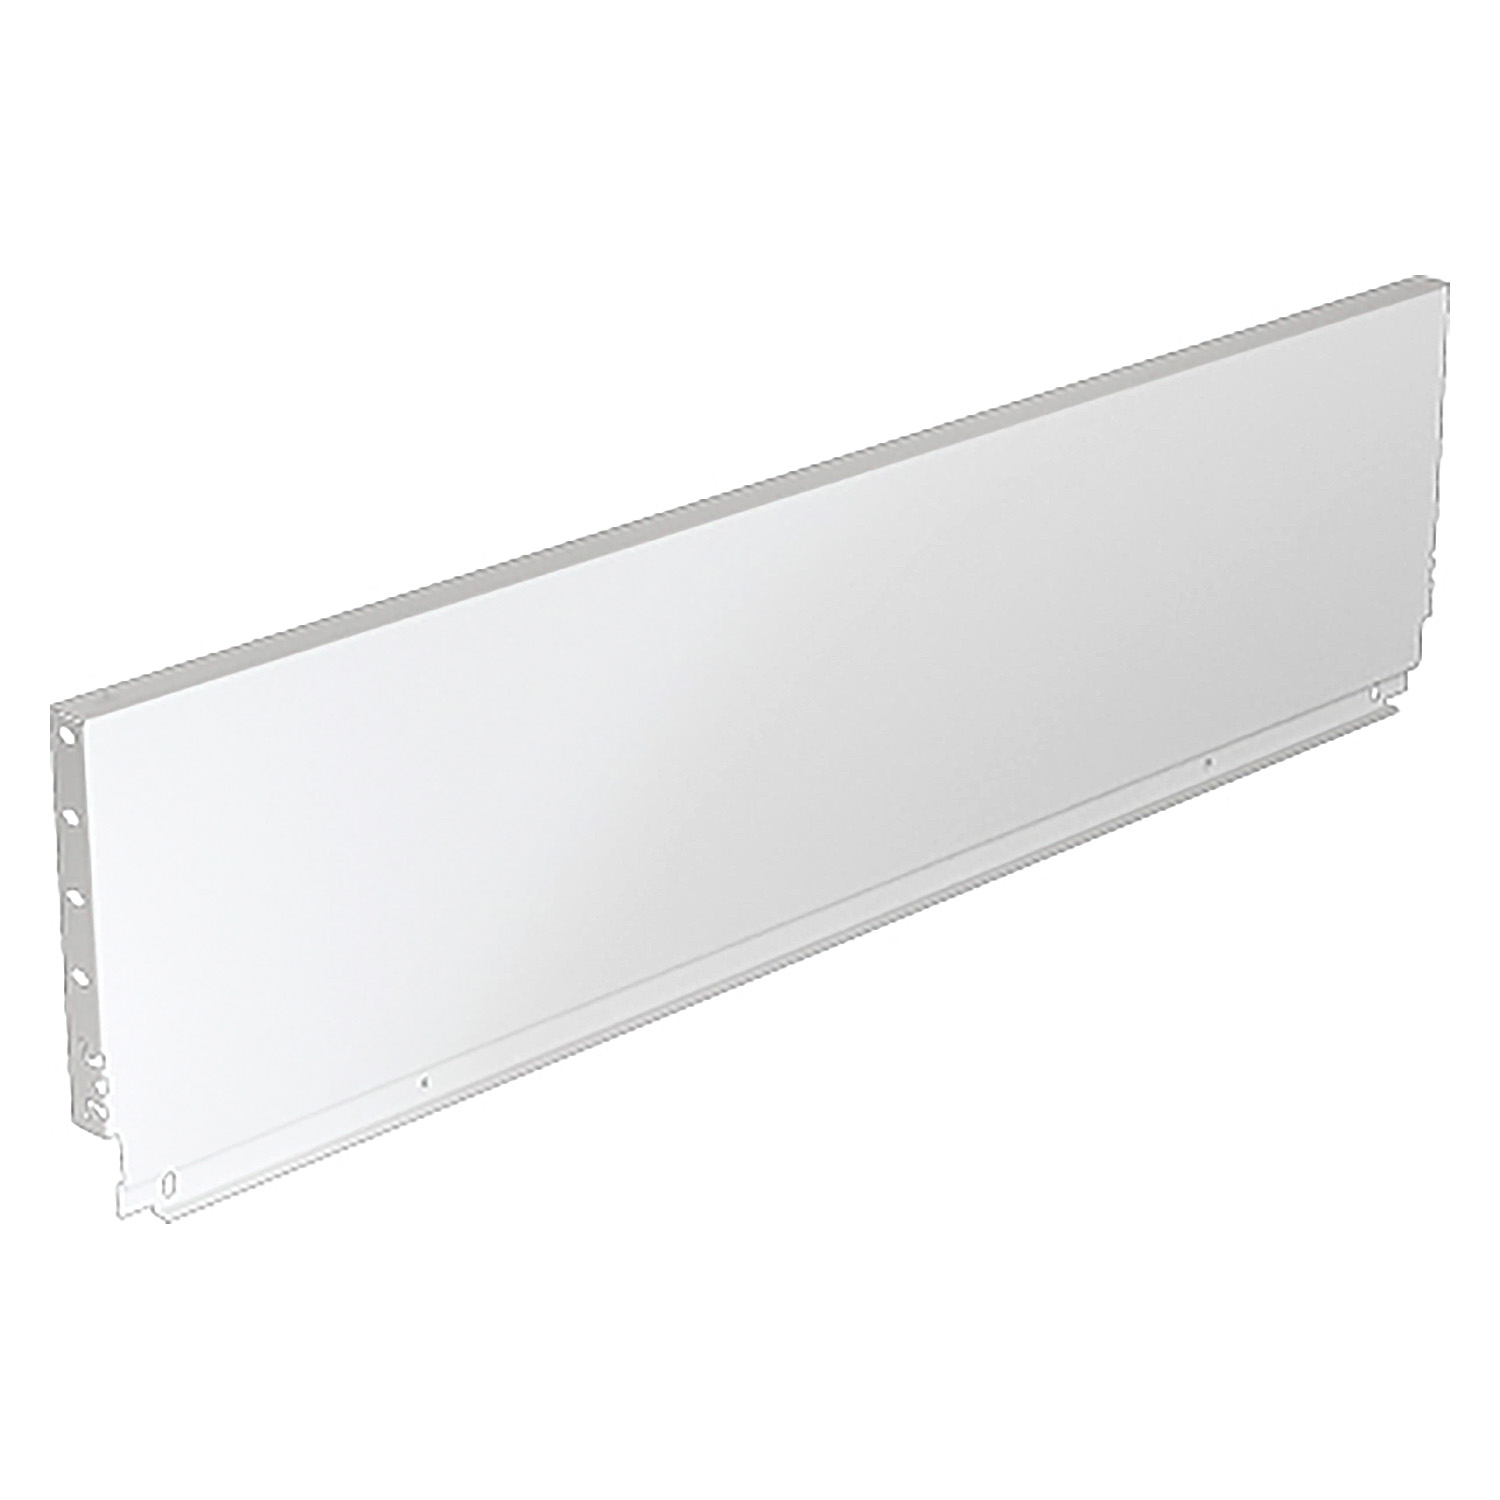 HETTICH Stahlrückwand ArciTech, 218 x 900 mm, weiß, 9121628